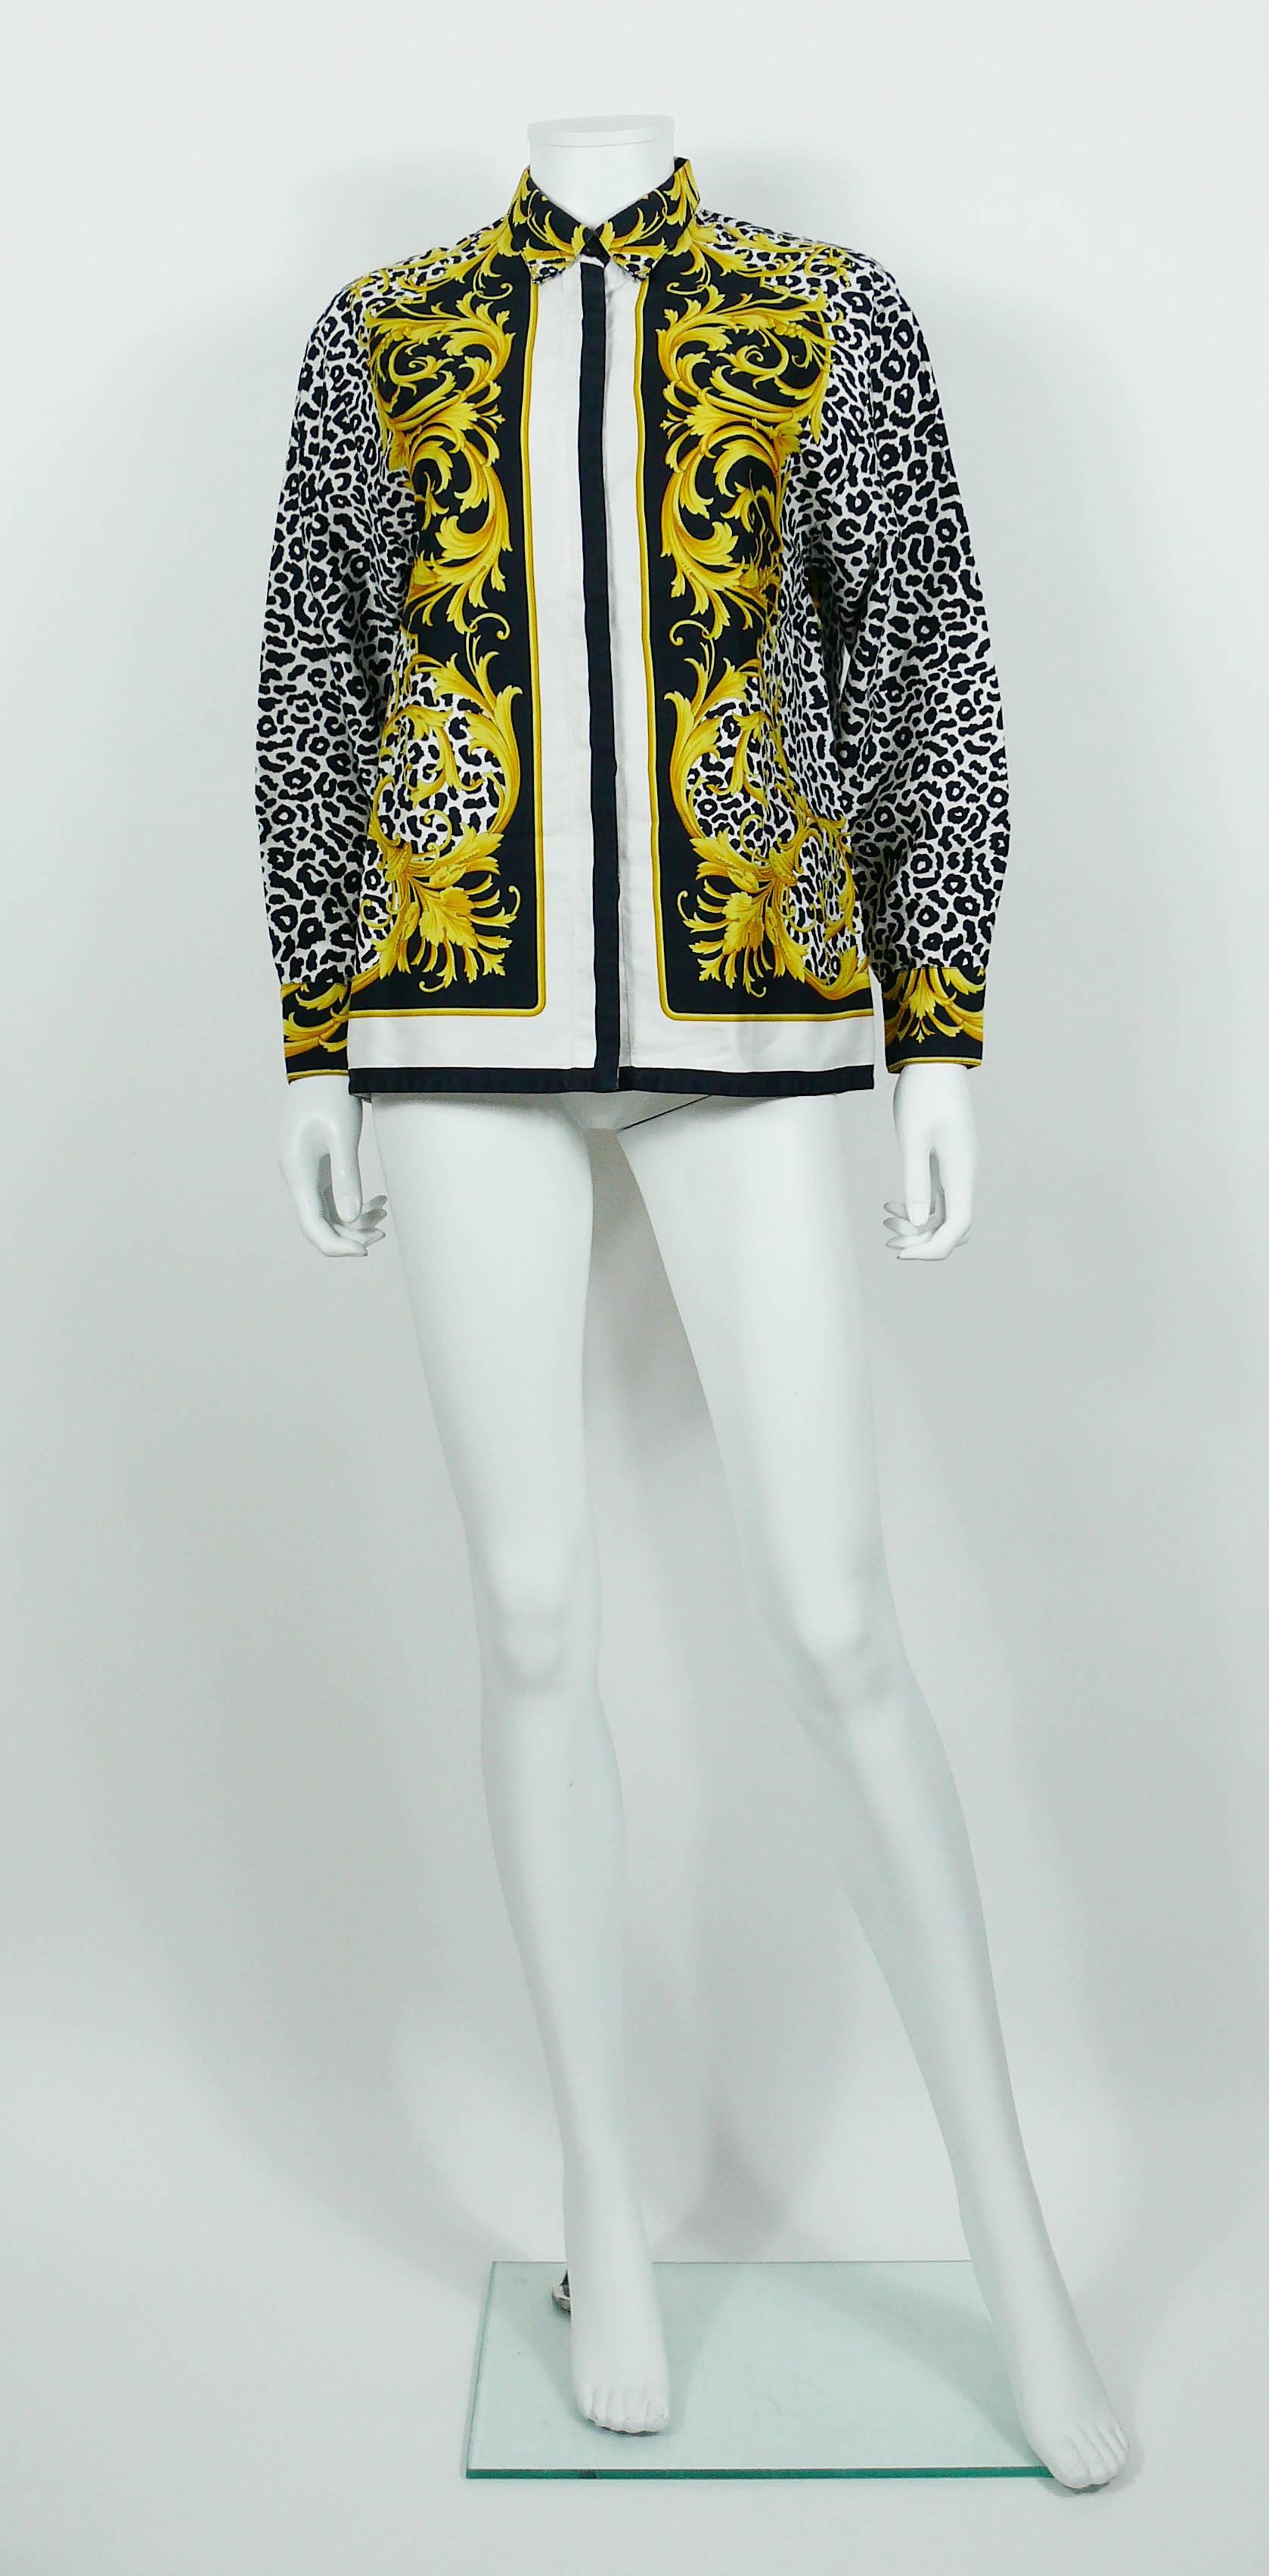 GIANNI VERSACE Vintage 1990er Jahre Barockes Baumwollhemd mit Leopardenmuster.

Auf dem Label steht VERSACE Classic V2.
Hergestellt in Italien.

Auf dem Größenetikett steht: 42 (Italienisch).
Bitte beachten Sie die Maße.

Auf dem Etikett steht: 100%